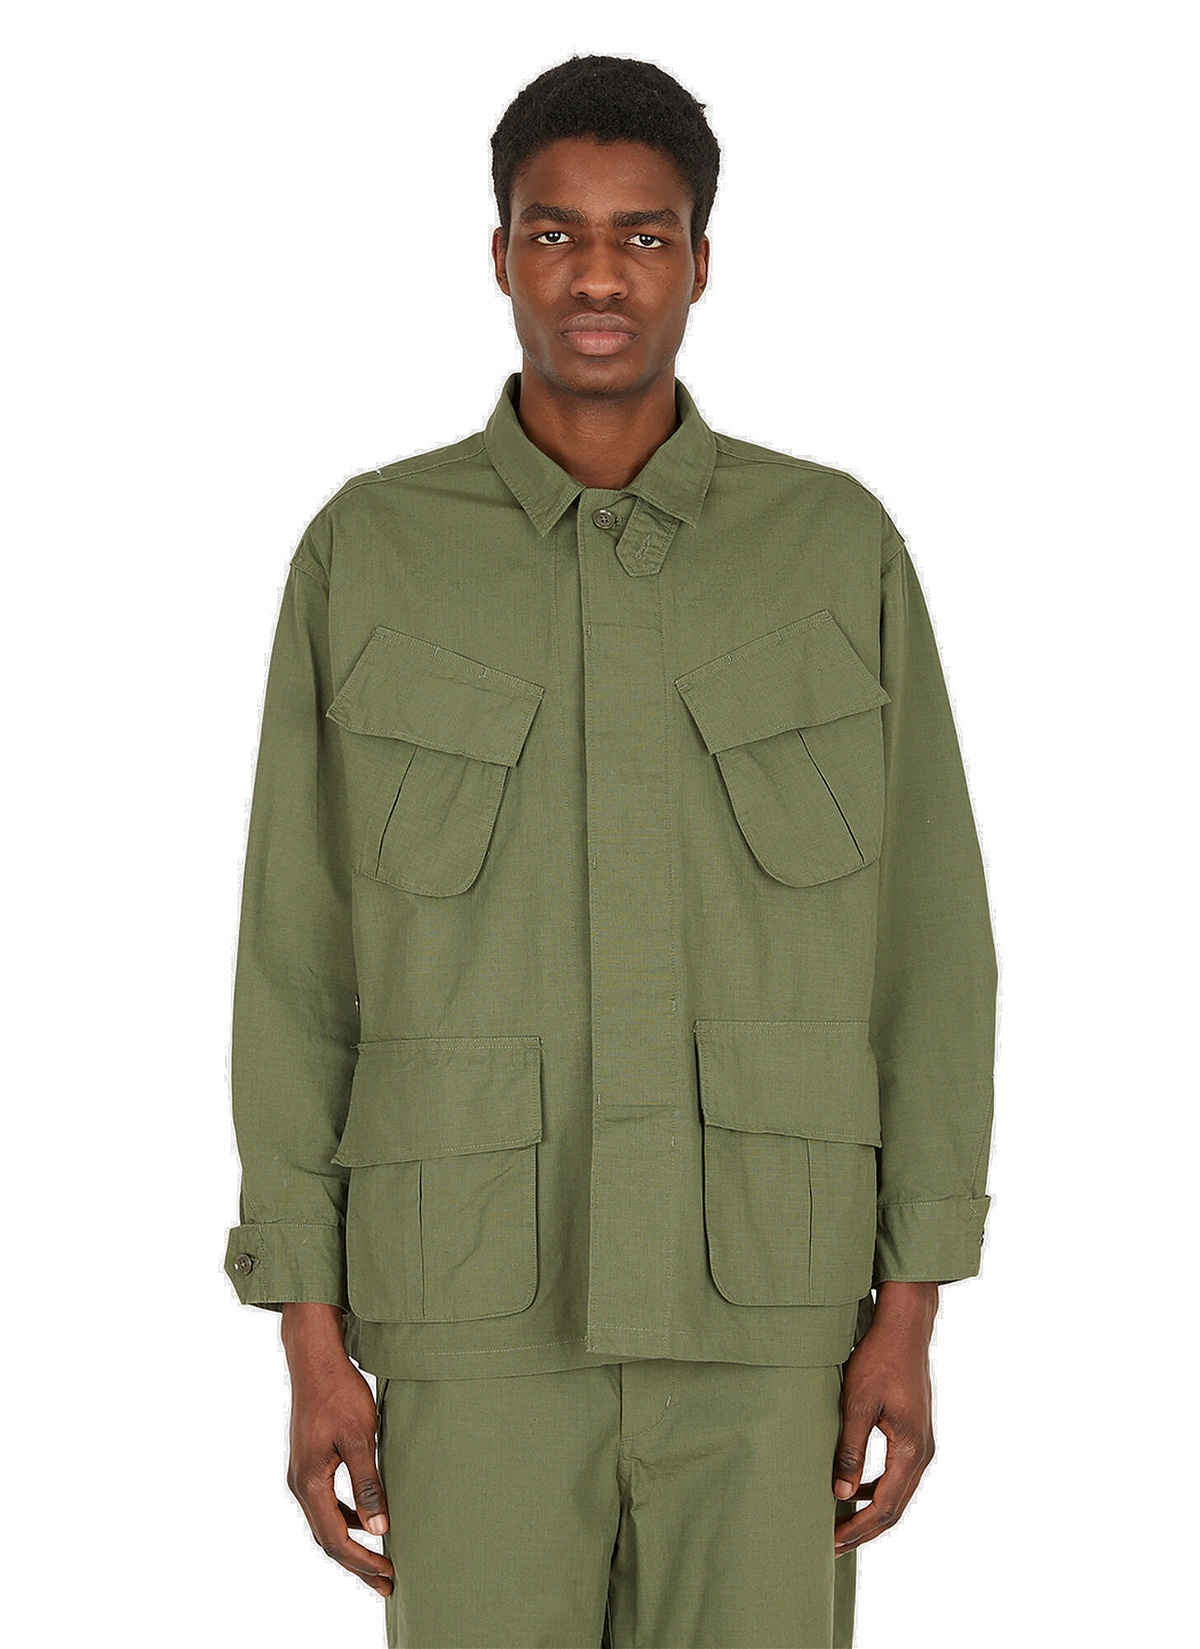 Jungle Fatigue Jacket in Khaki Engineered Garments